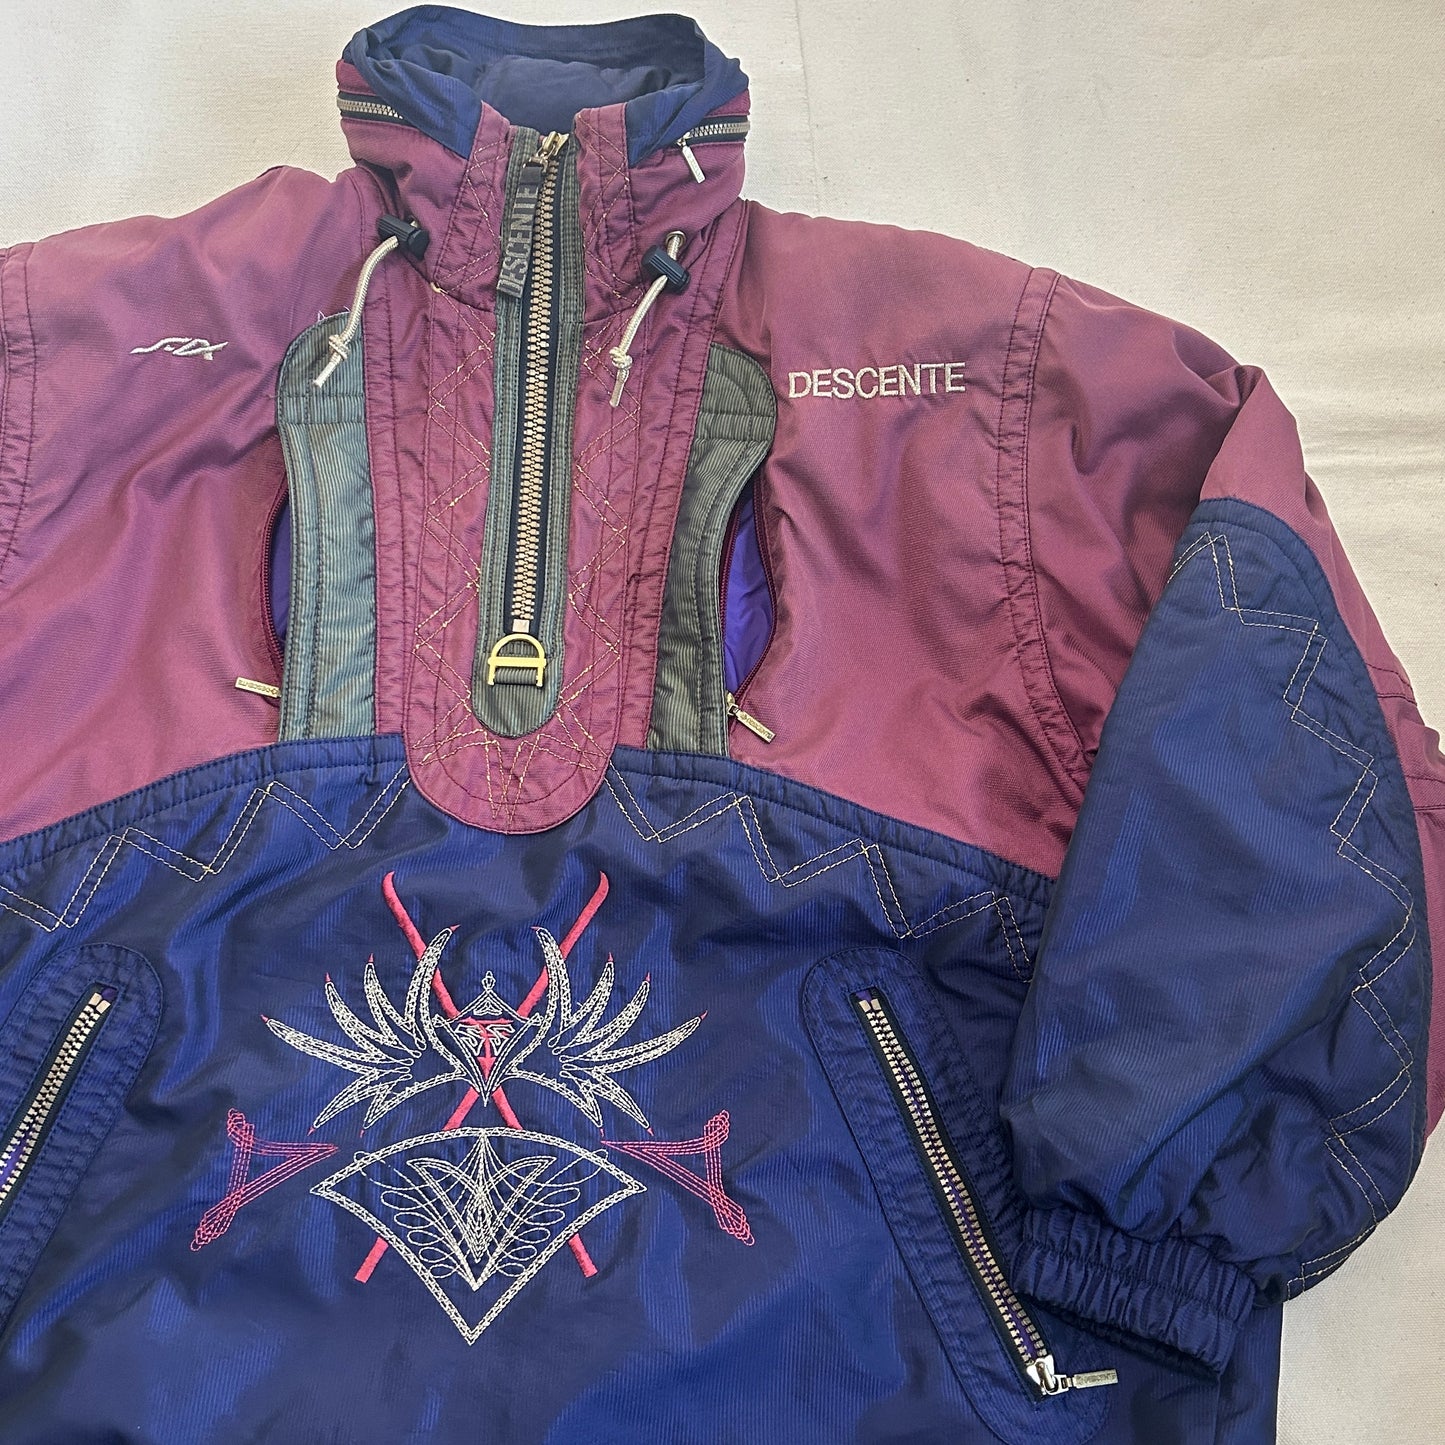 1990s DESCENTE Switzerland Team vintage ski Jacket